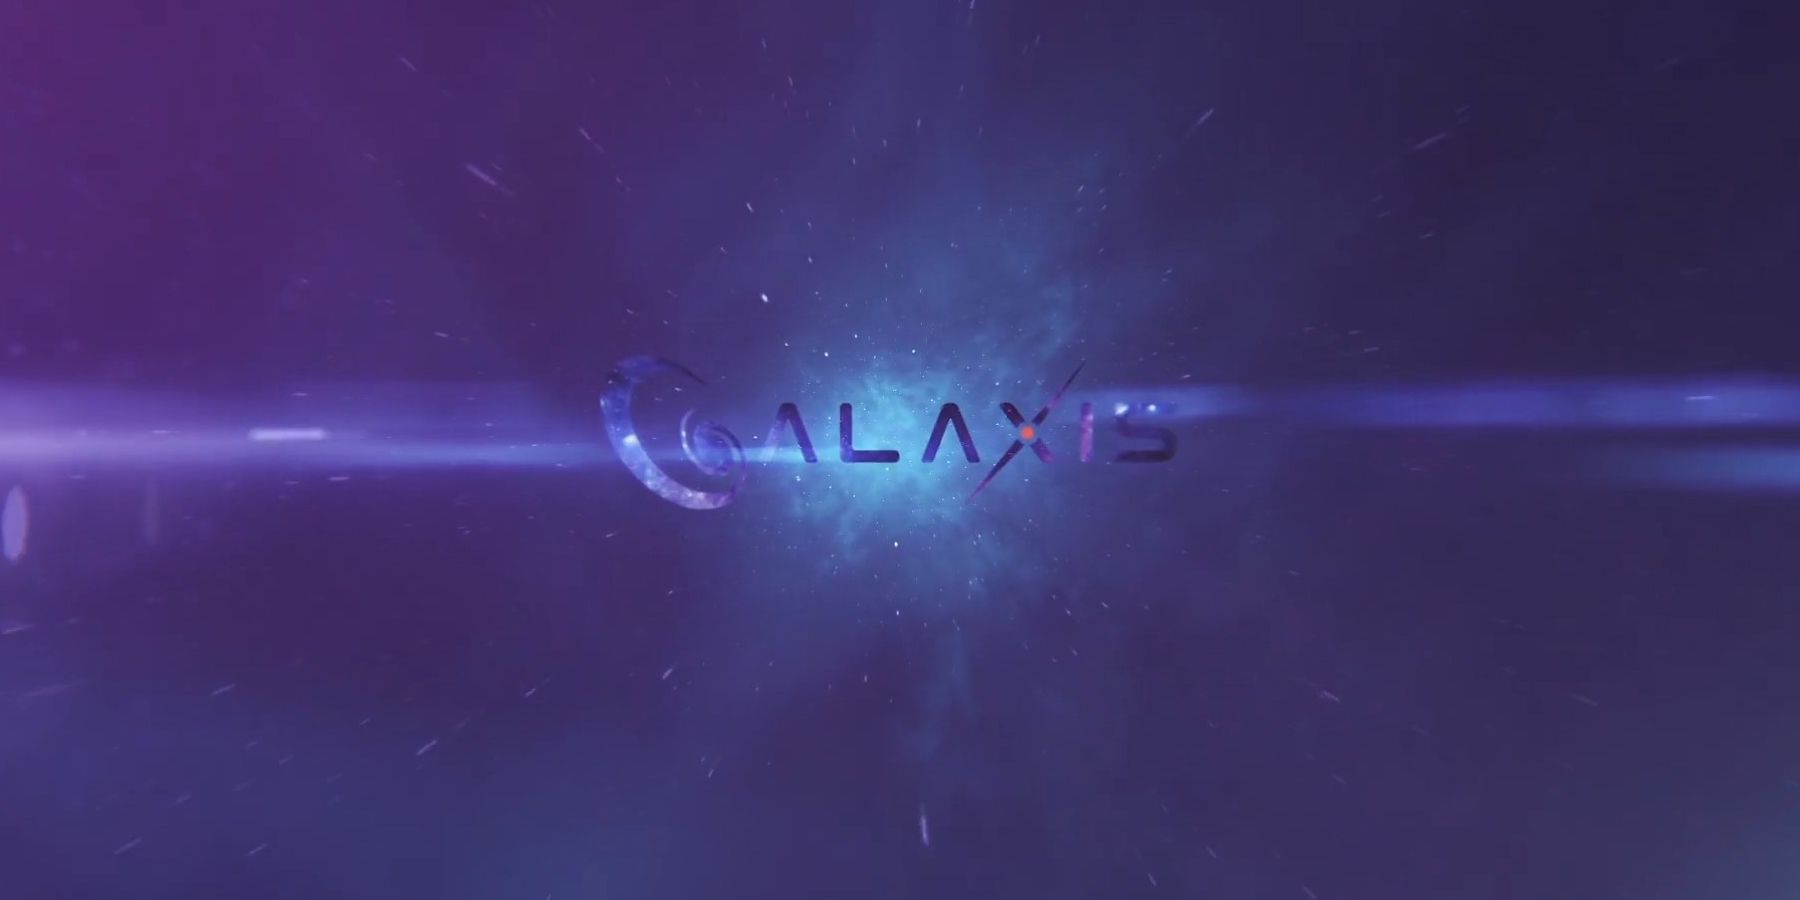 Galaxis interjú: Max Gallardo vezérigazgató részletezi a streaming platform pontrendszereit, a közösségi moderálást és még sok más